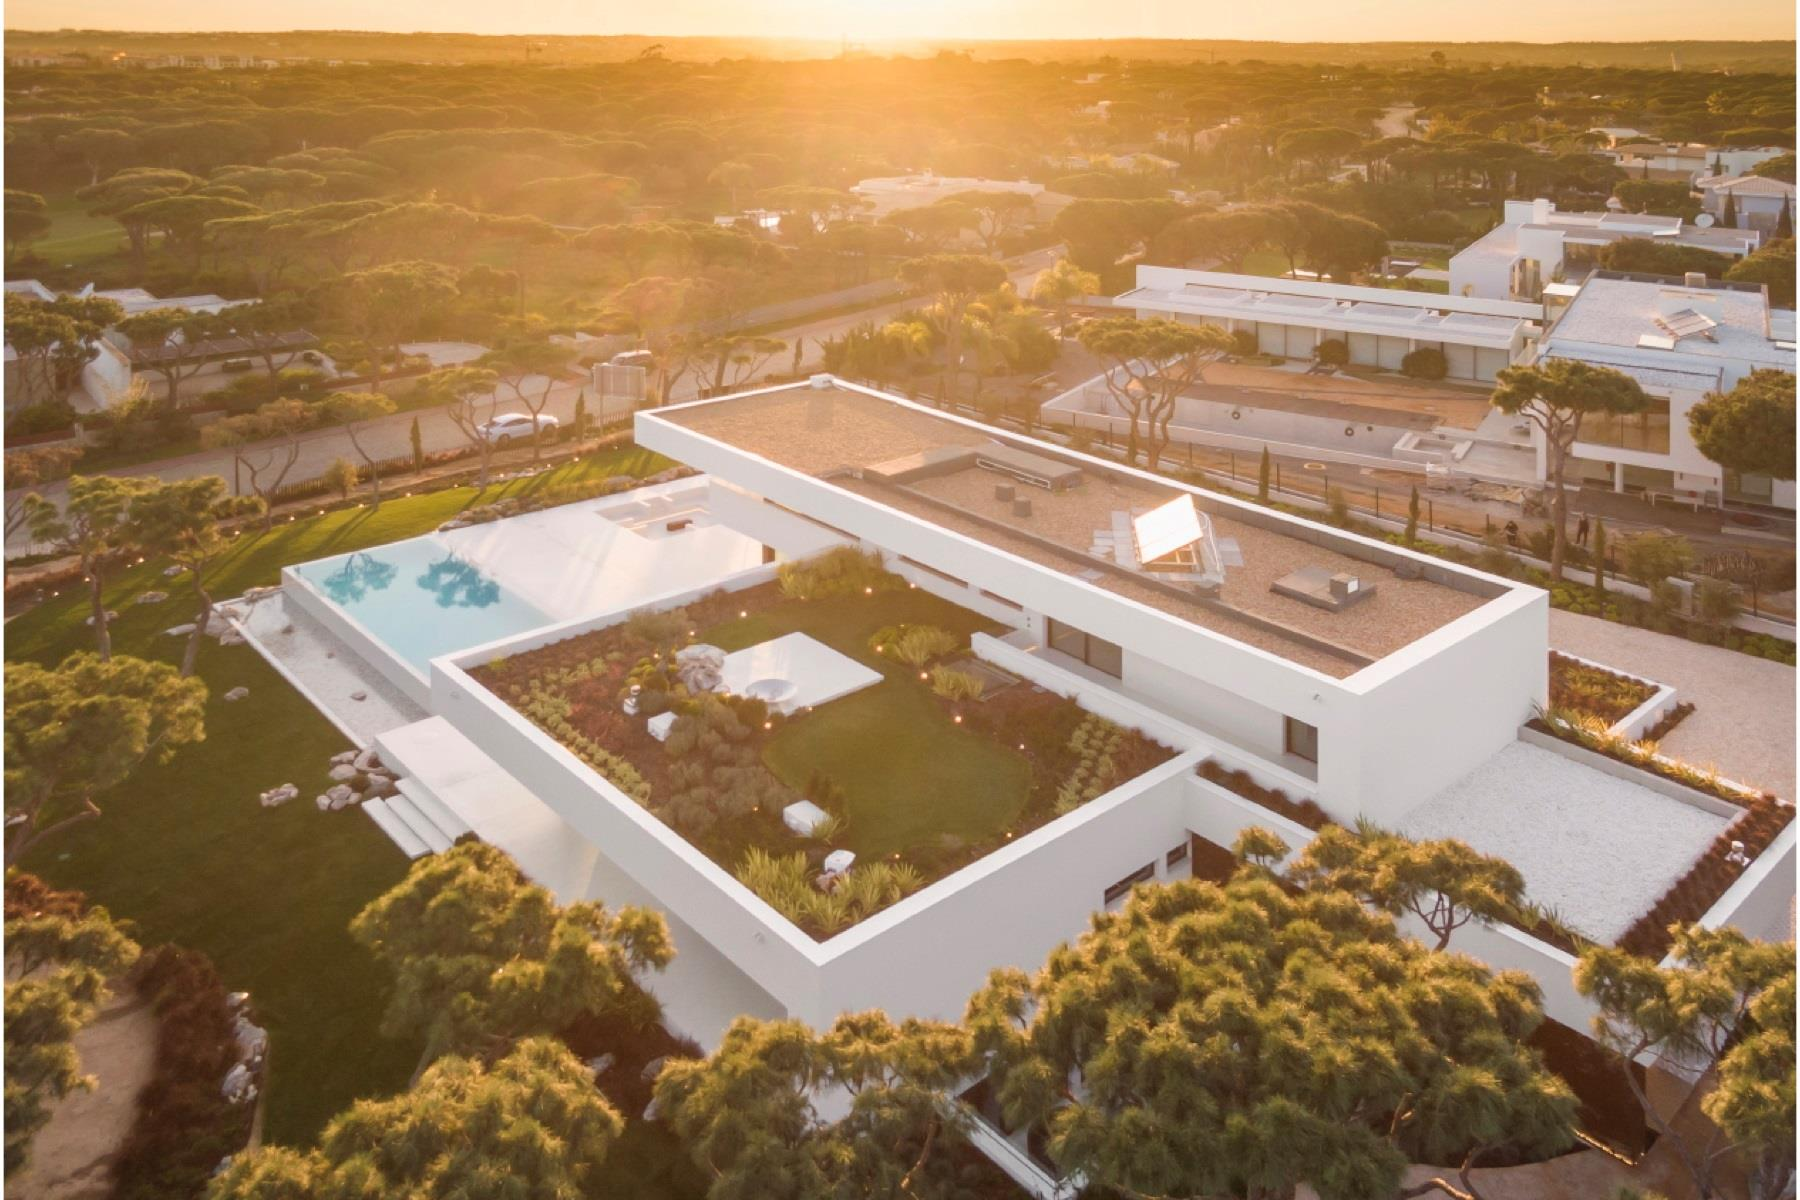 Portal Inmobiliario de Lujo en Loulé, presenta chalet exclusivo venta en Algarve, inmuebles lujosos para comprar y residencias independientes en venta en Vilamoura.